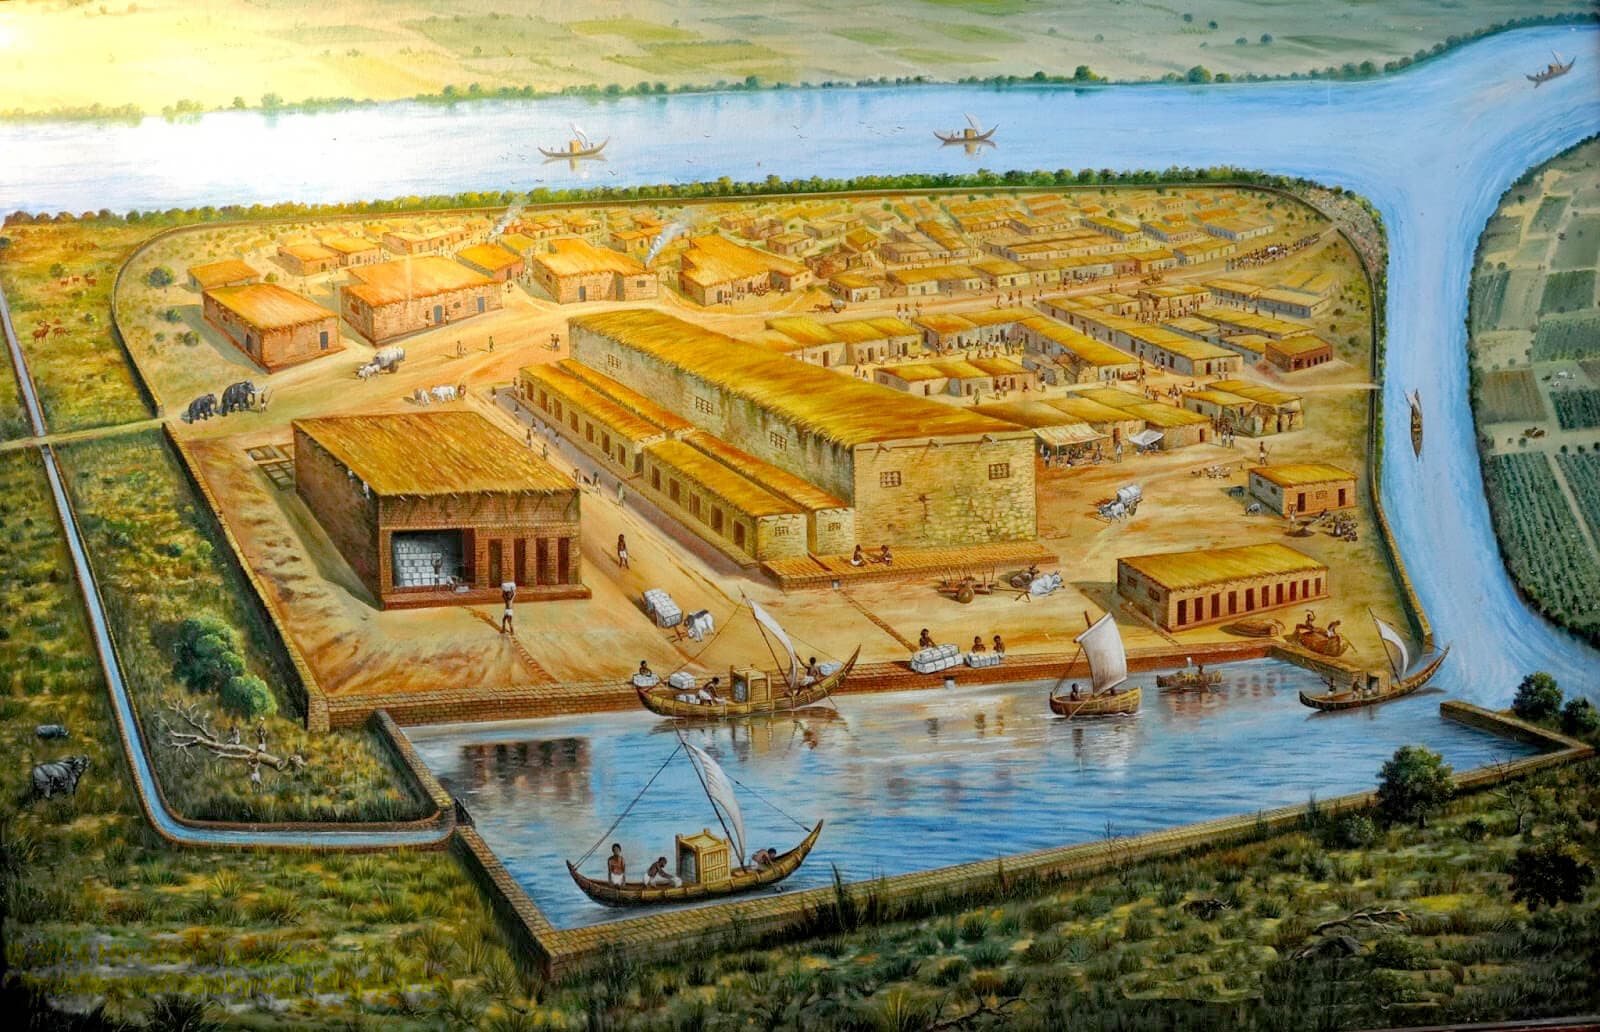 War Lothal eine vedische Stadt? Die Beweise von Vastu